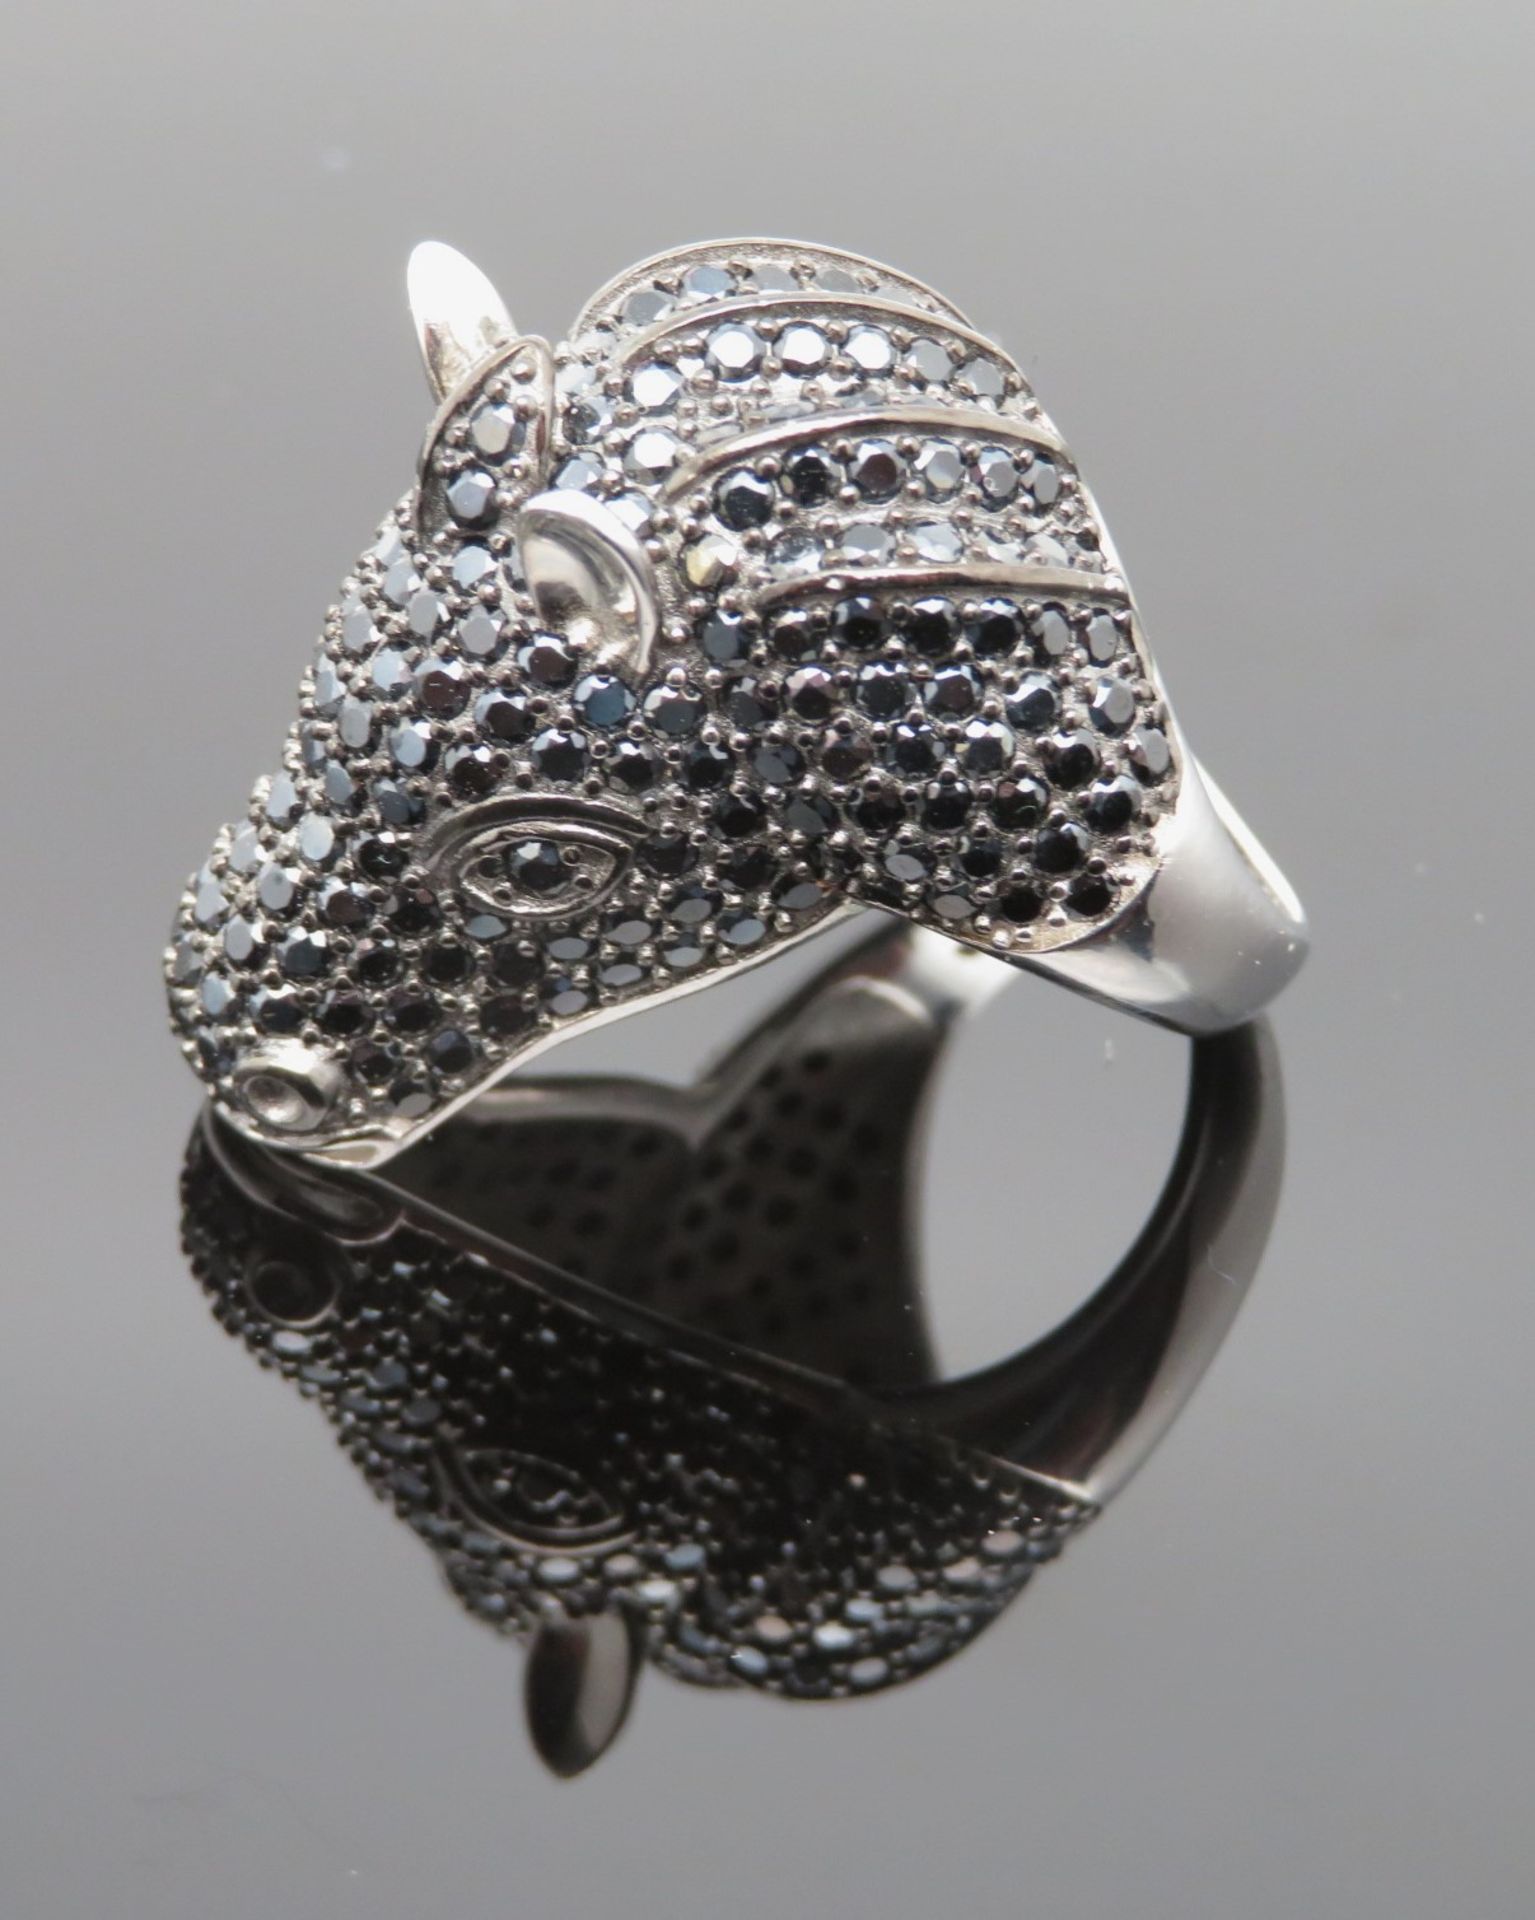 Statement Ring in Gestalt eines Pferdekopfs, reicher schwarzer Spinellbesatz, Silber 925/000, punzi - Image 2 of 2